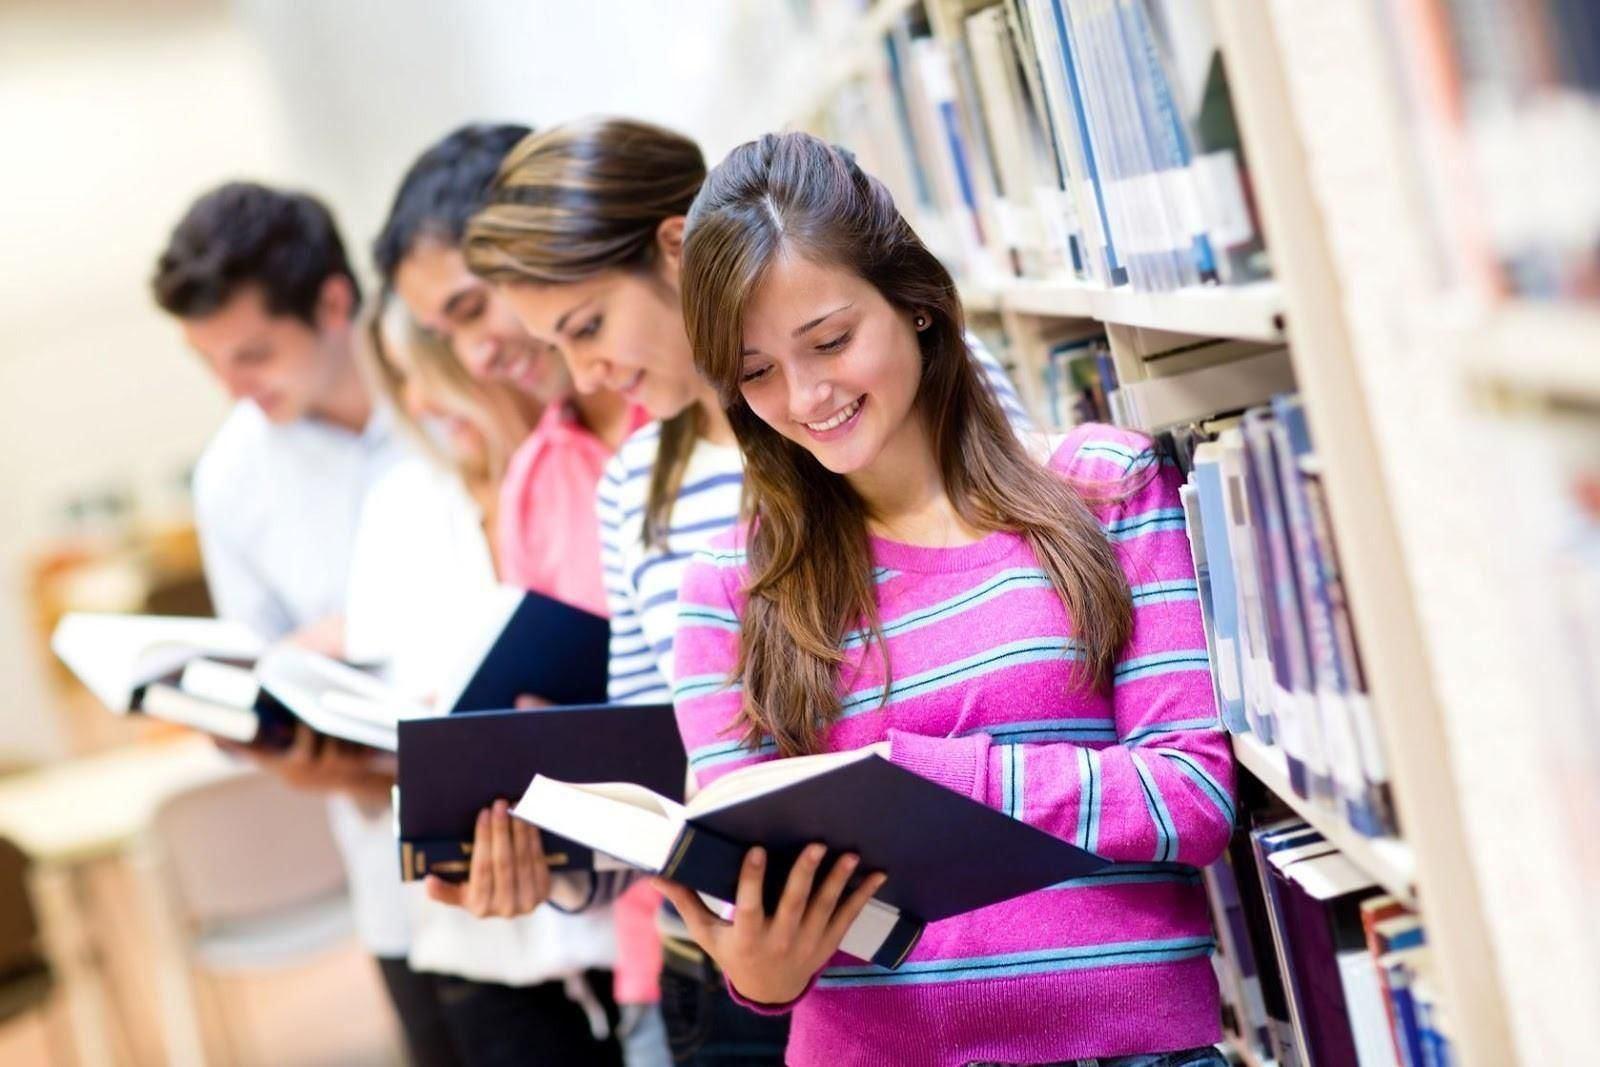 Читать молодежную прозу студенты. Студенты в библиотеке. Подросток с книгой. Студент с книгами. Подростки в библиотеке.